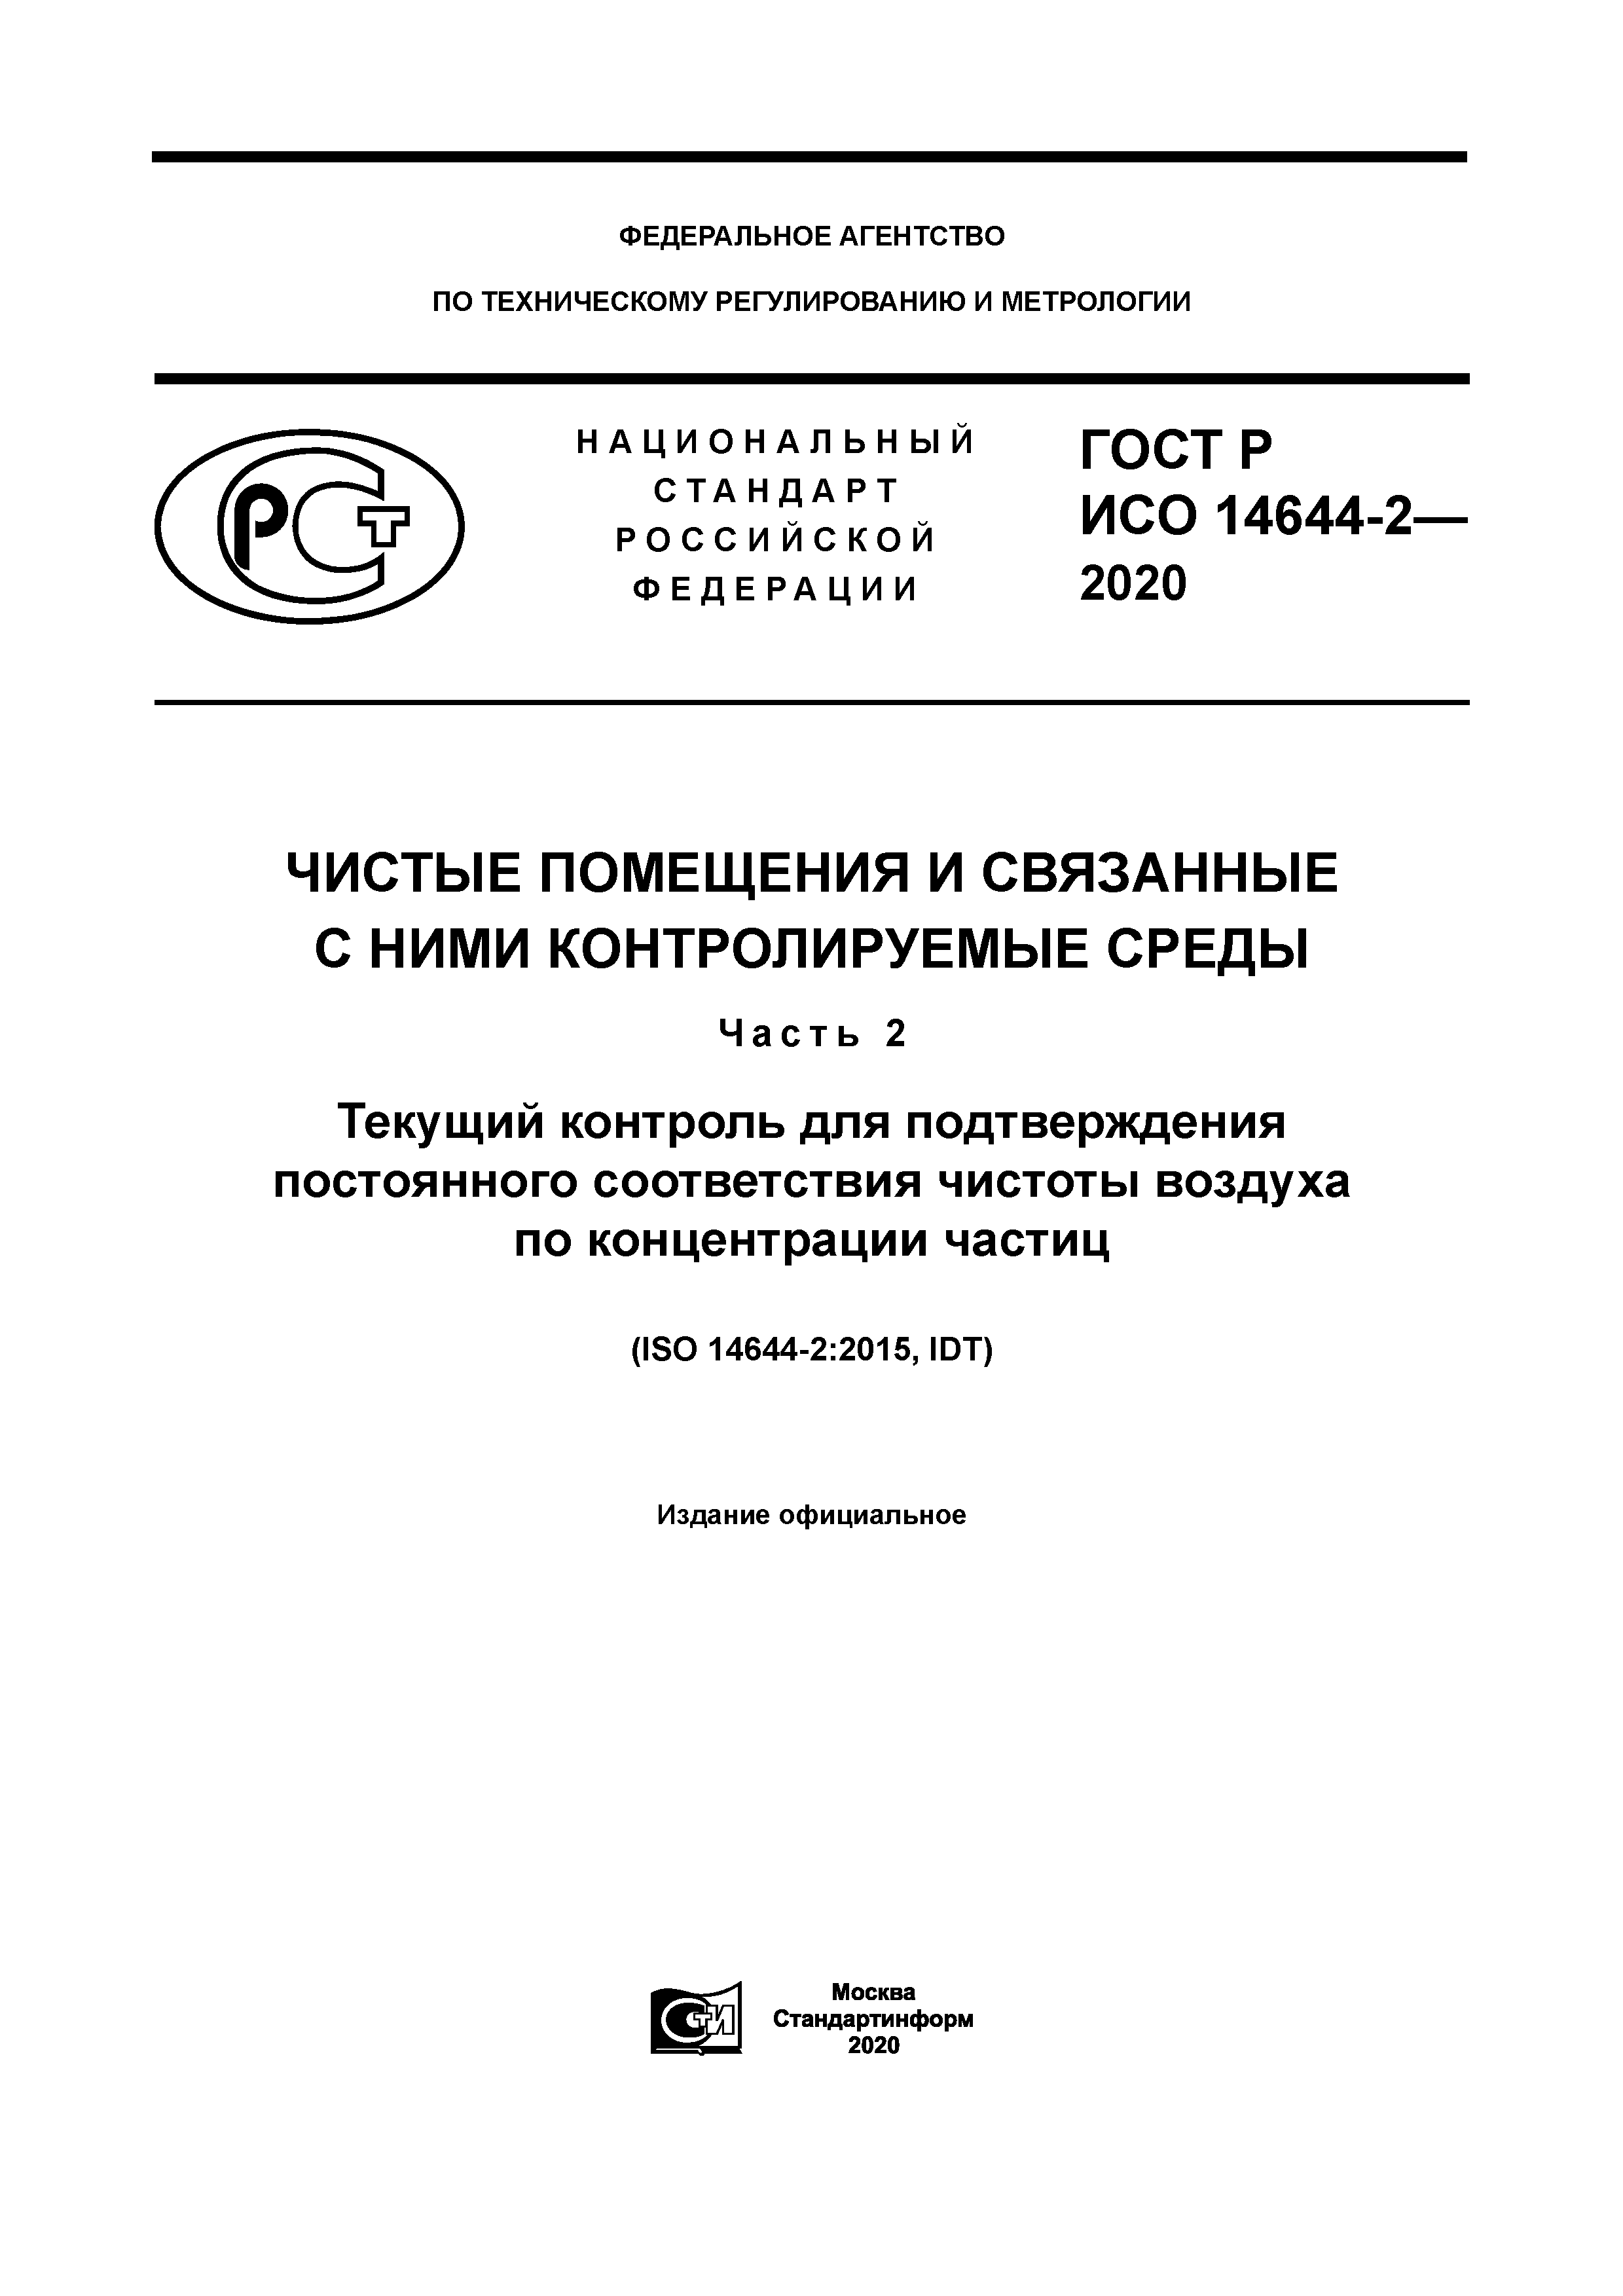 ГОСТ Р ИСО 14644-2-2020